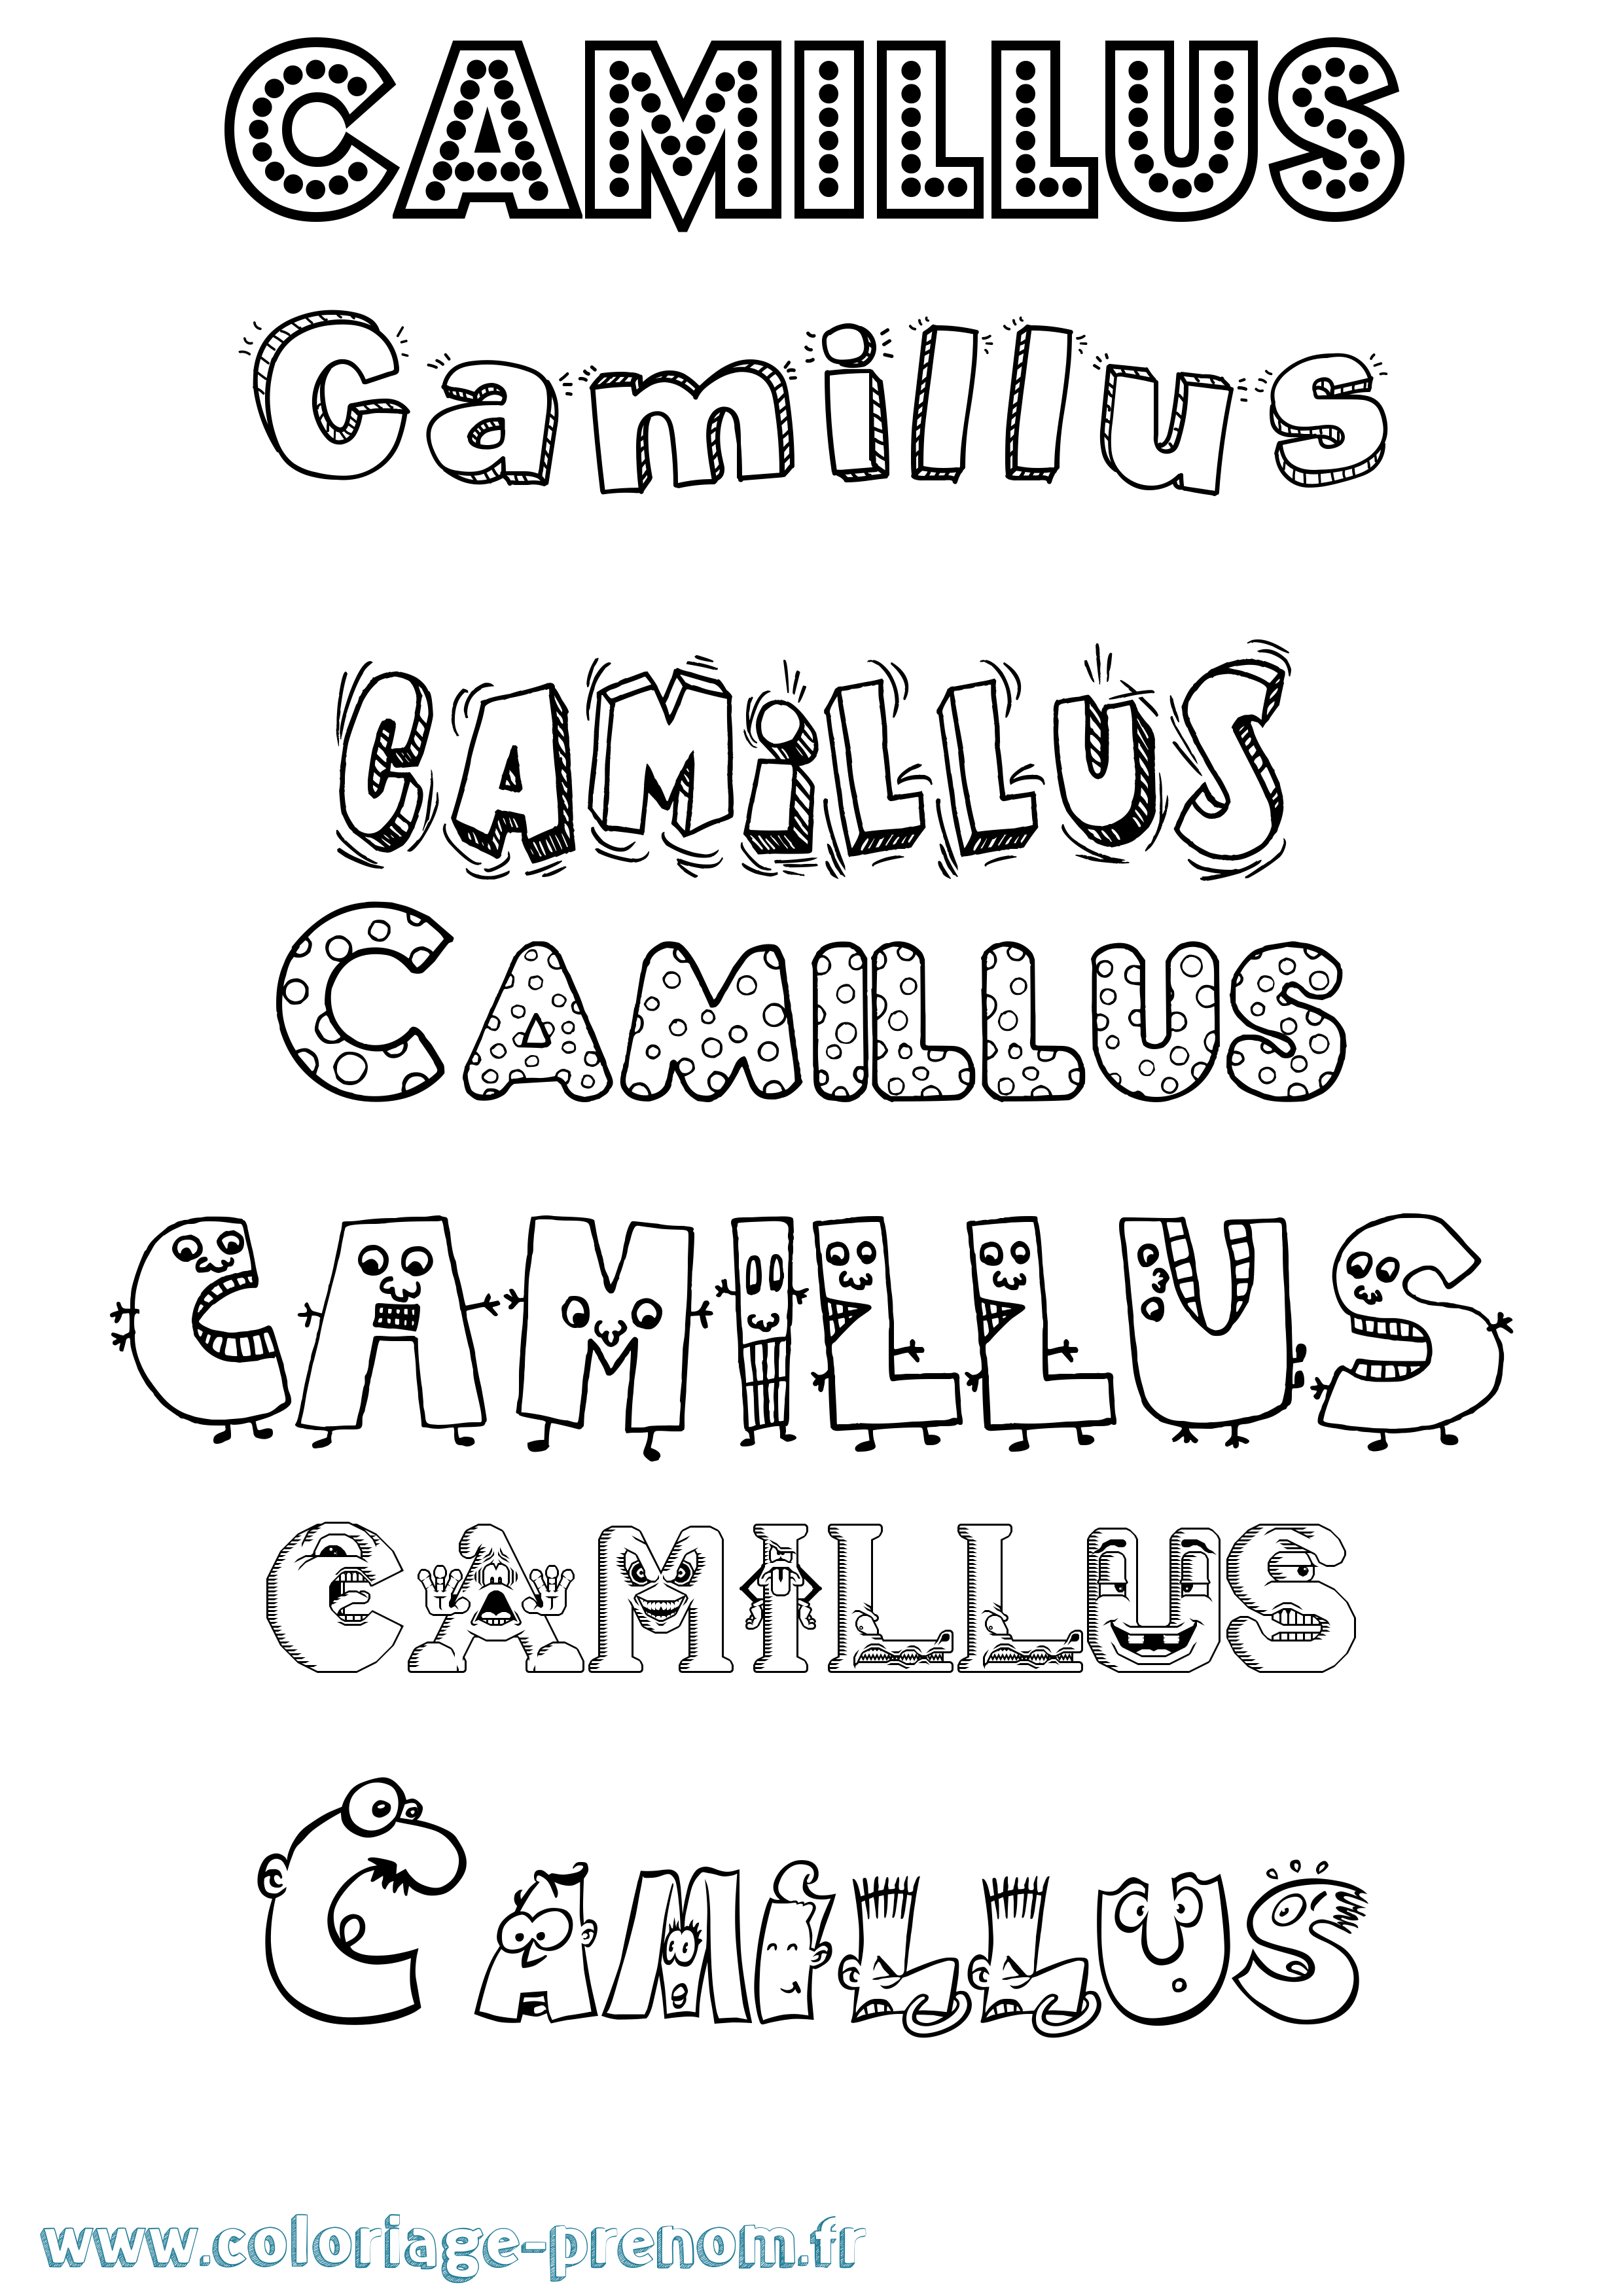 Coloriage prénom Camillus Fun